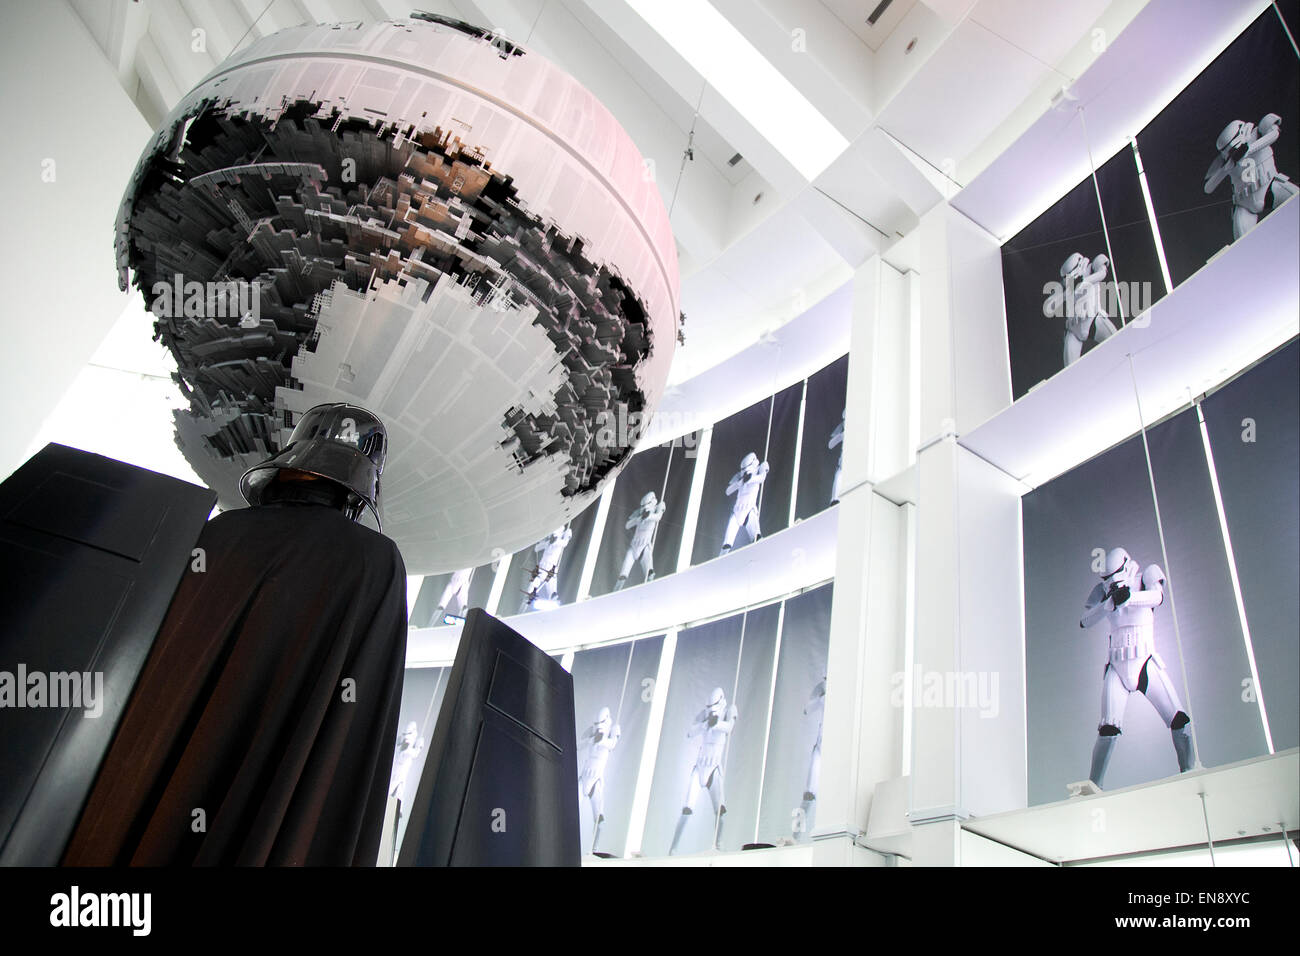 Tokio, Japón. 28 abr, 2015. Una estatua de tamaño real de Darth Vader en la pantalla en la entrada de la exposición Visión de Star Wars en la ciudad de Tokio Galería Sky en Roppongi Hills, el 28 de abril de 2015, en Tokio, Japón. La exposición está dividida en seis áreas temáticas, ubicados en diferentes salones, y los visitantes pueden ver los modelos de las naves de batalla, estatuas en tamaño natural de los principales personajes y armas Jedi de las películas. La exposición también presenta 60 piezas de arte y 100 movie props. Se abrirá al público a partir del 29 de abril al 28 de junio. Crédito: Aflo Co., Ltd./Alamy Live News Foto de stock